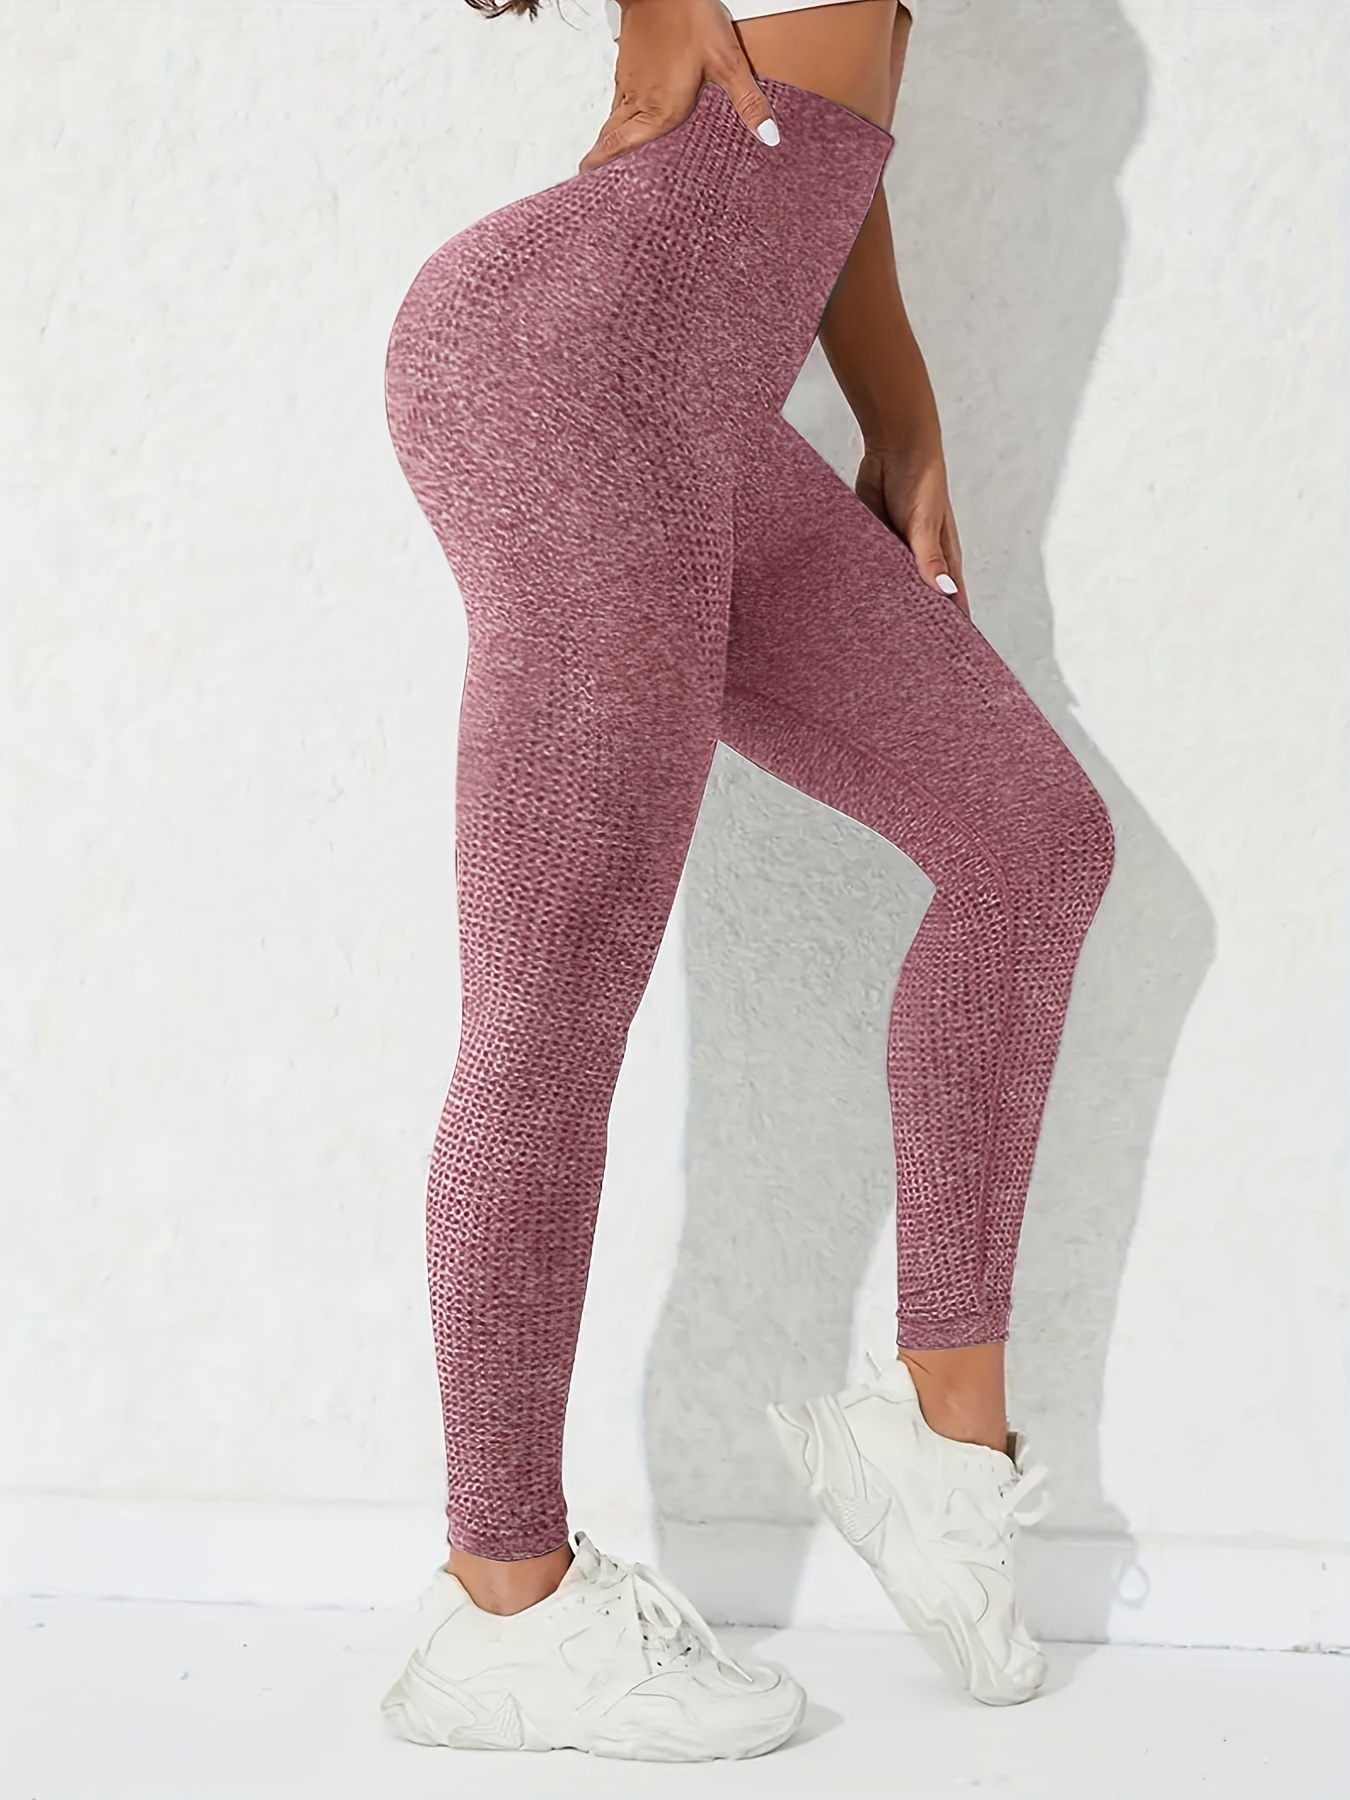 Leopard Print High Waist Yoga Seamless Workout Leggings For Women